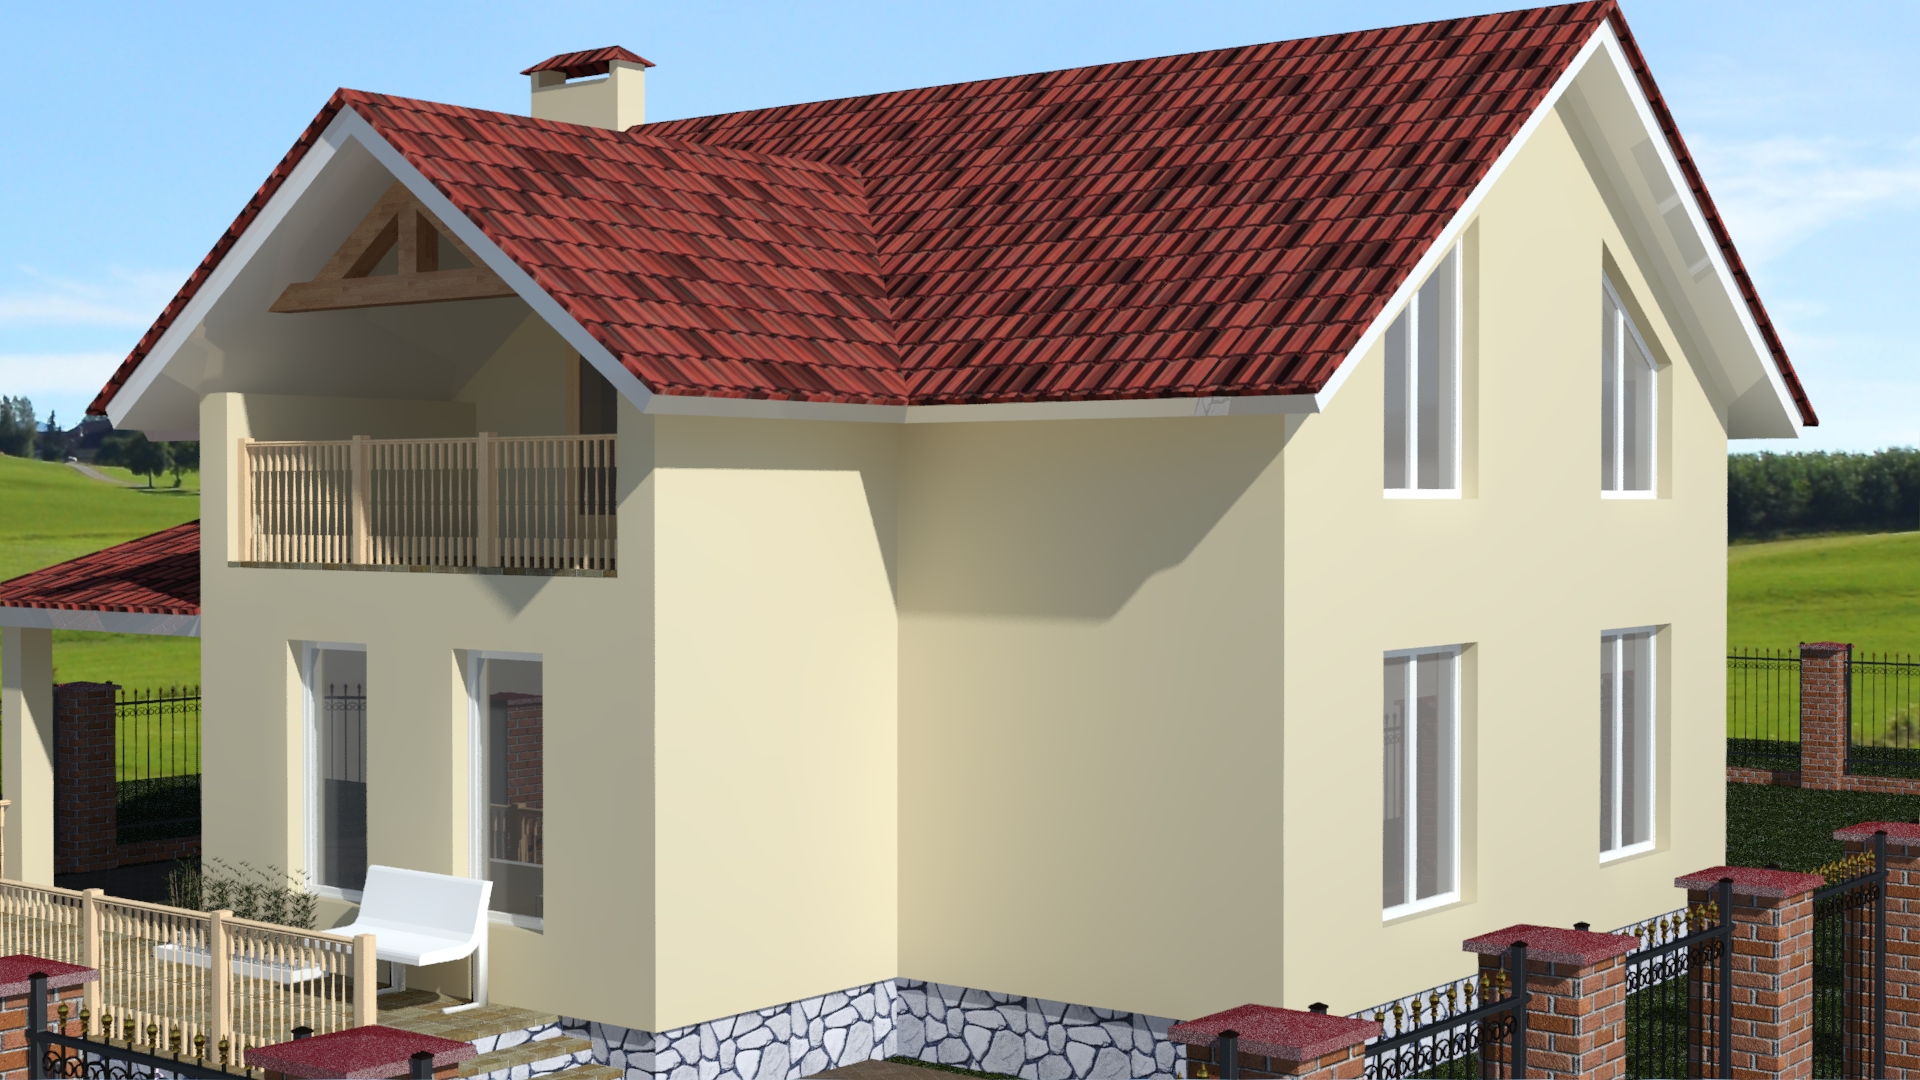 Строительство индивидуального жилого дома по типовому проекту № 05/01-20